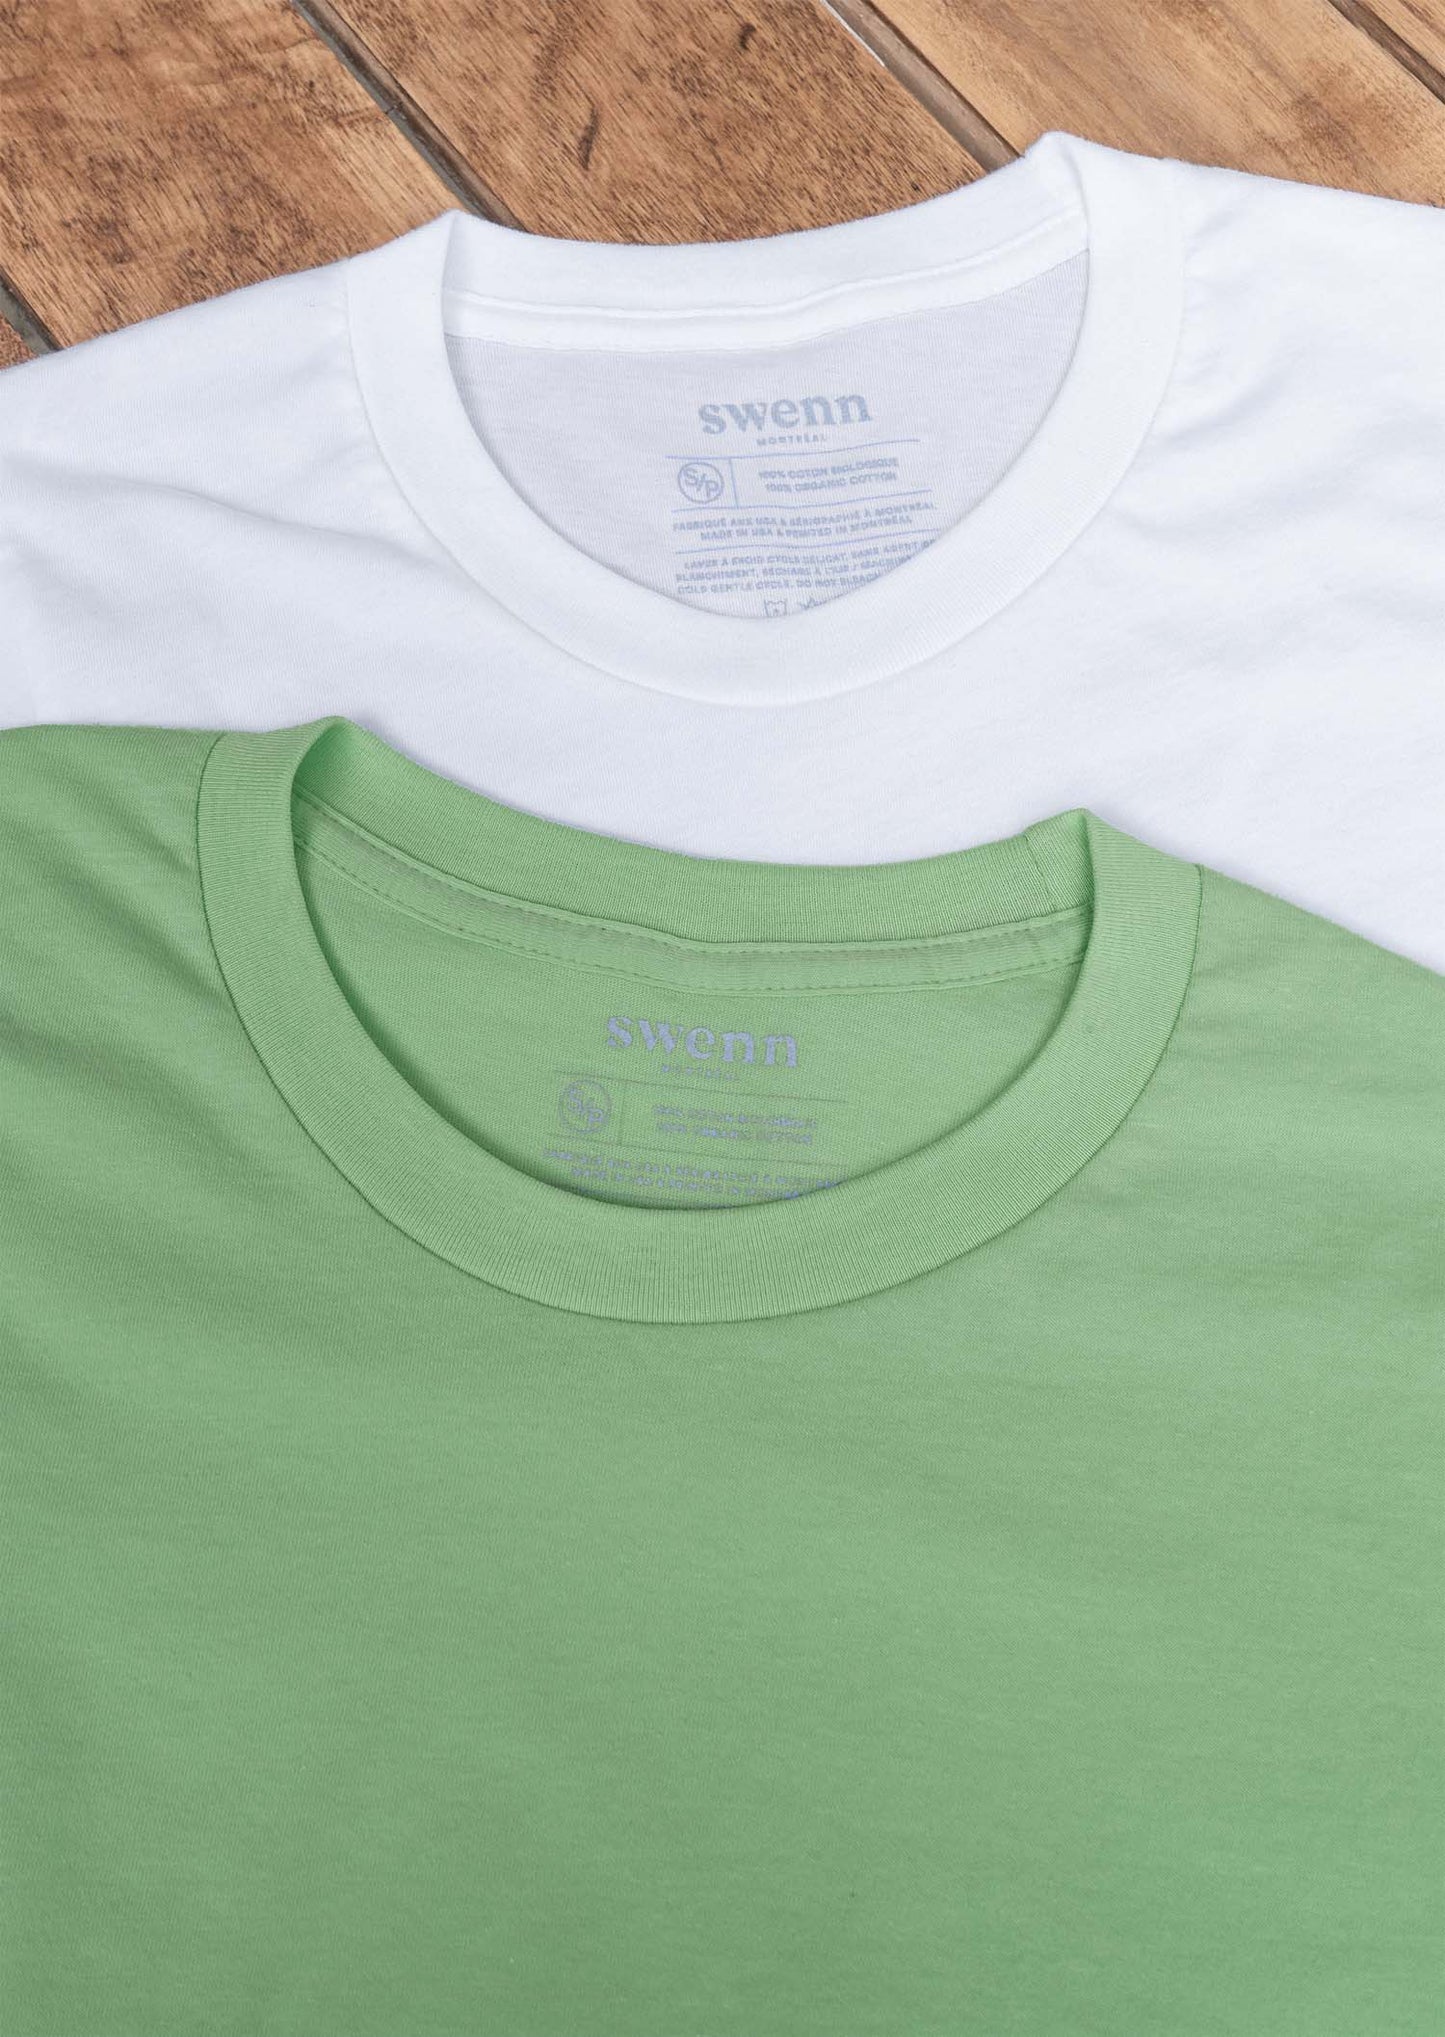 2 t-shirts white - lichen green